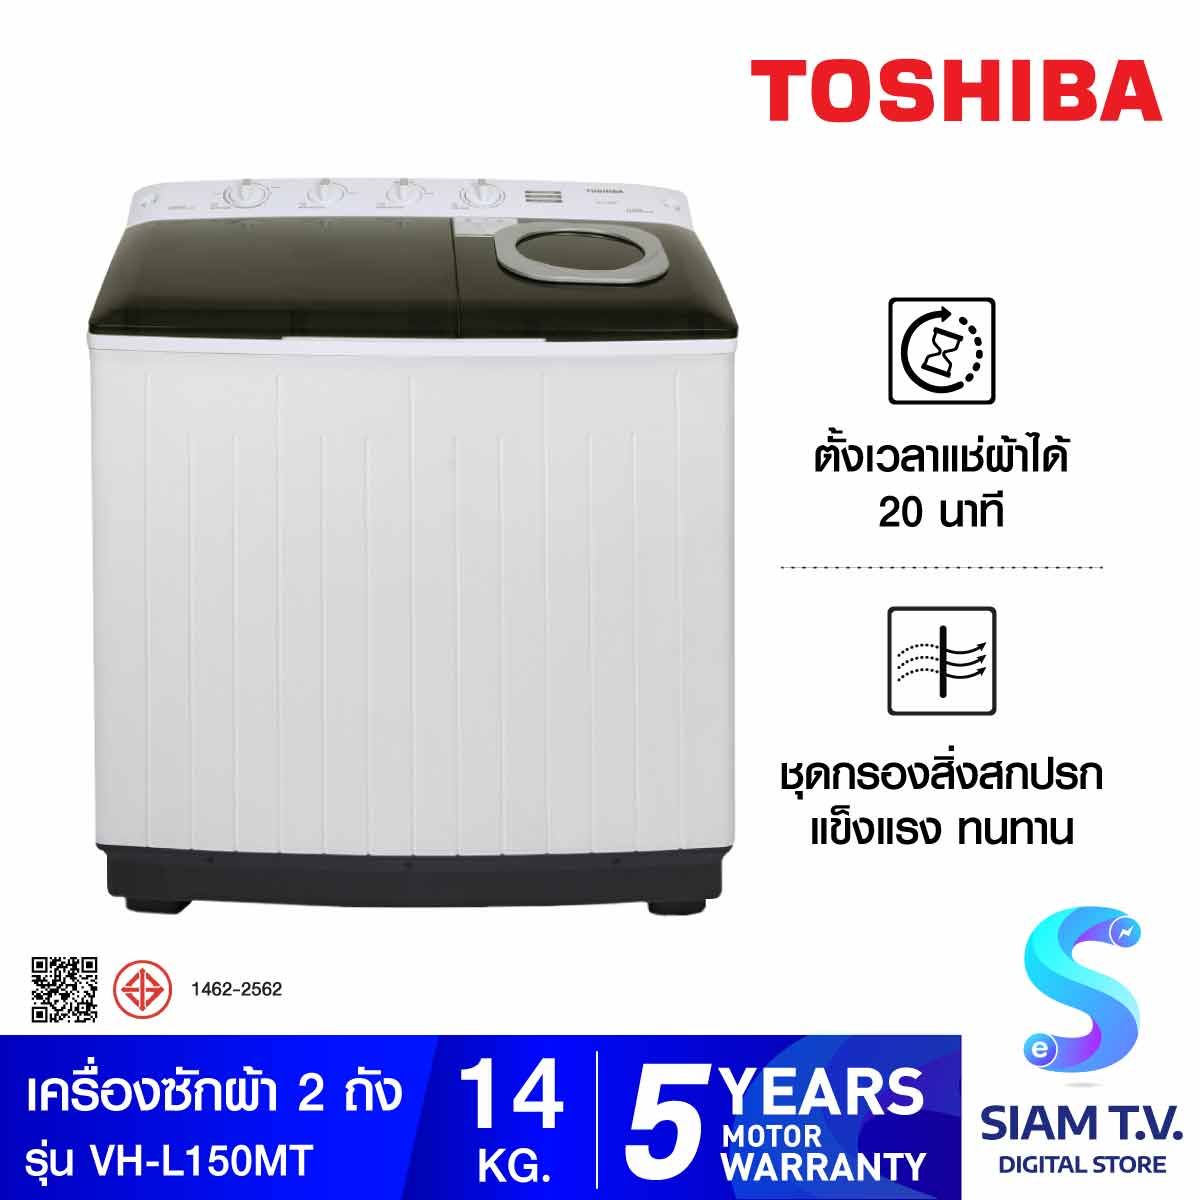 TOSHIBA เครื่องซักผ้า 2 ถัง 14Kg. สีขาว  รุ่นVH-L150MT